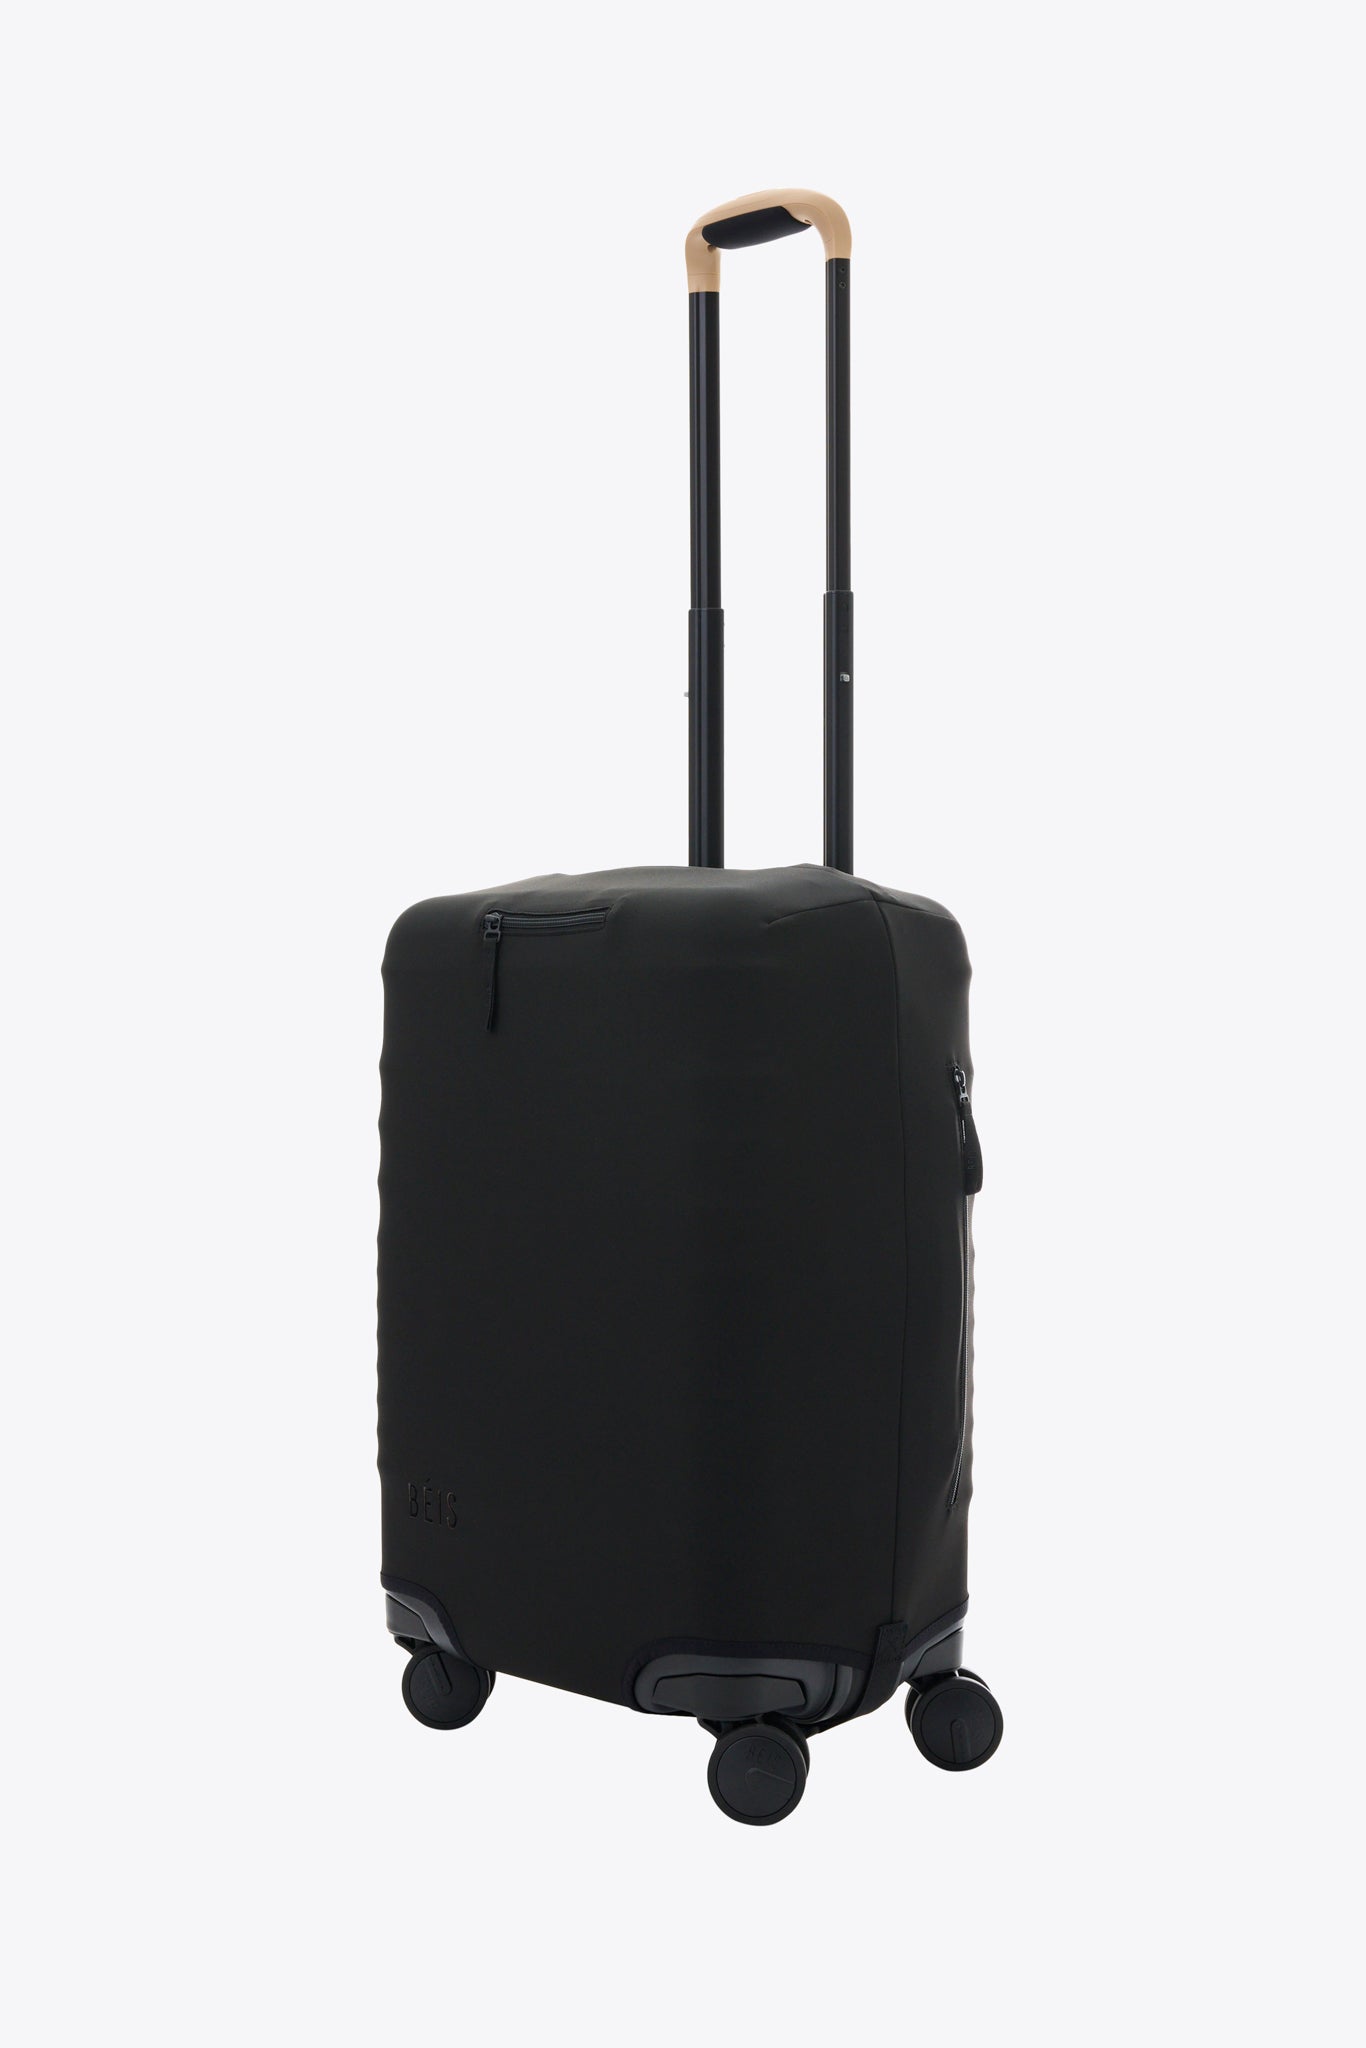 Le couvre-bagages de cabine en noir